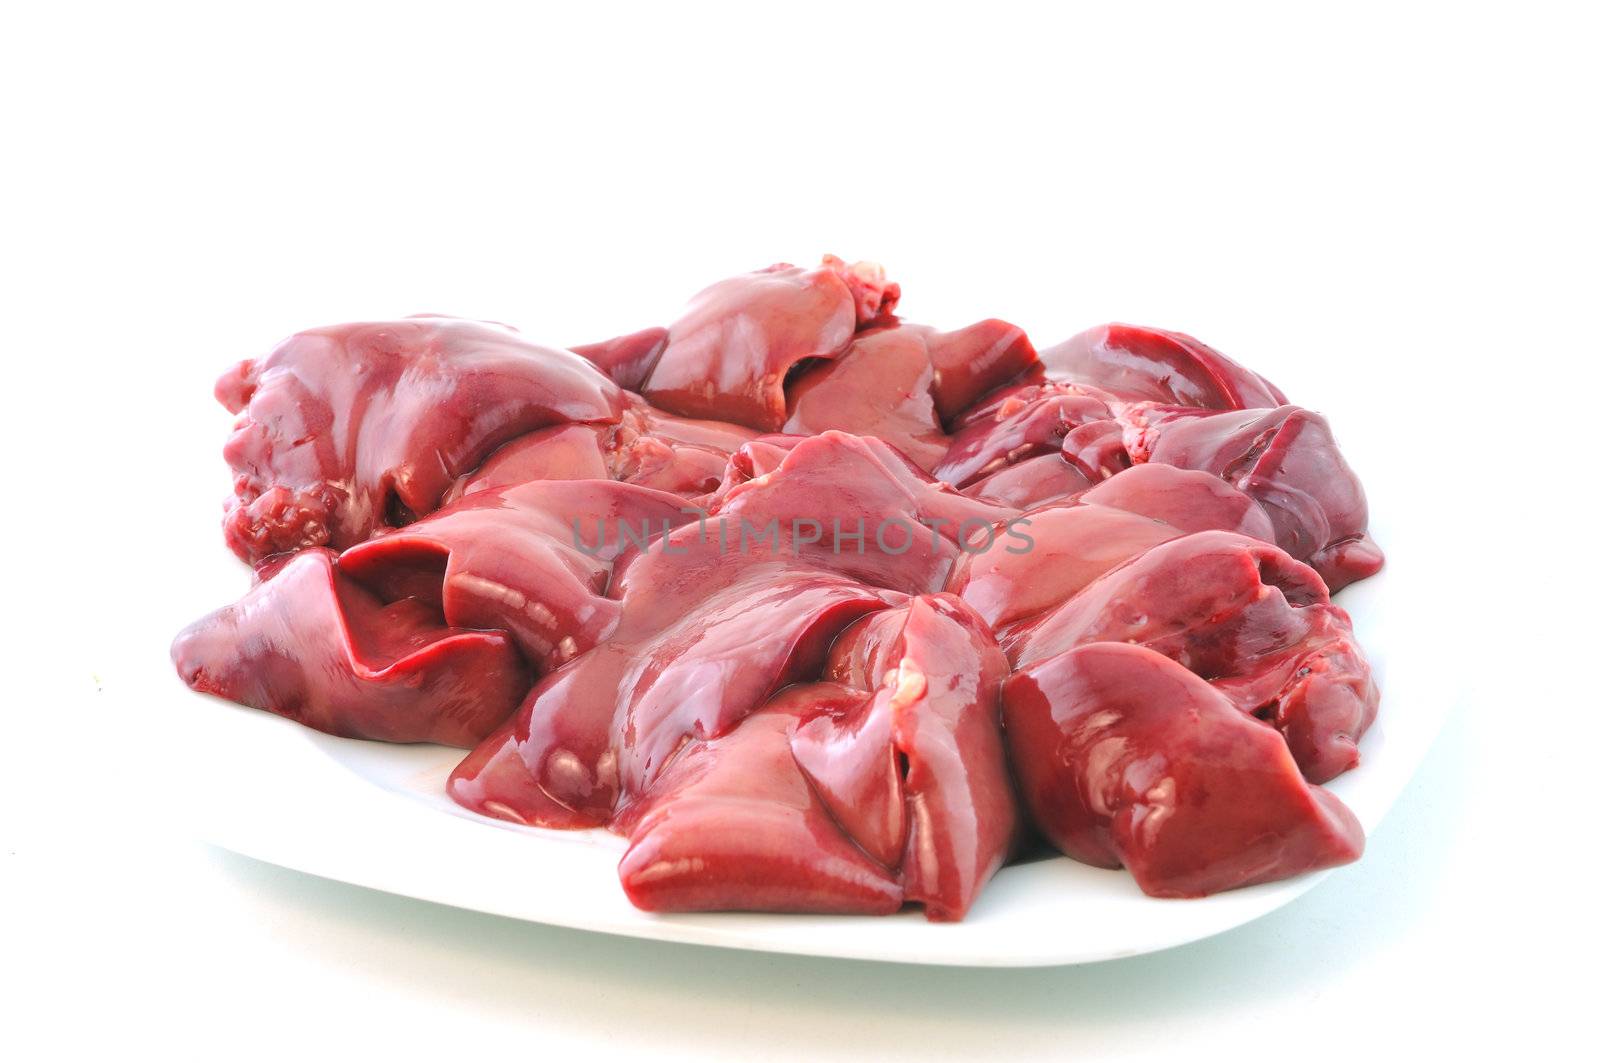 Raw chicken livers  by ben44